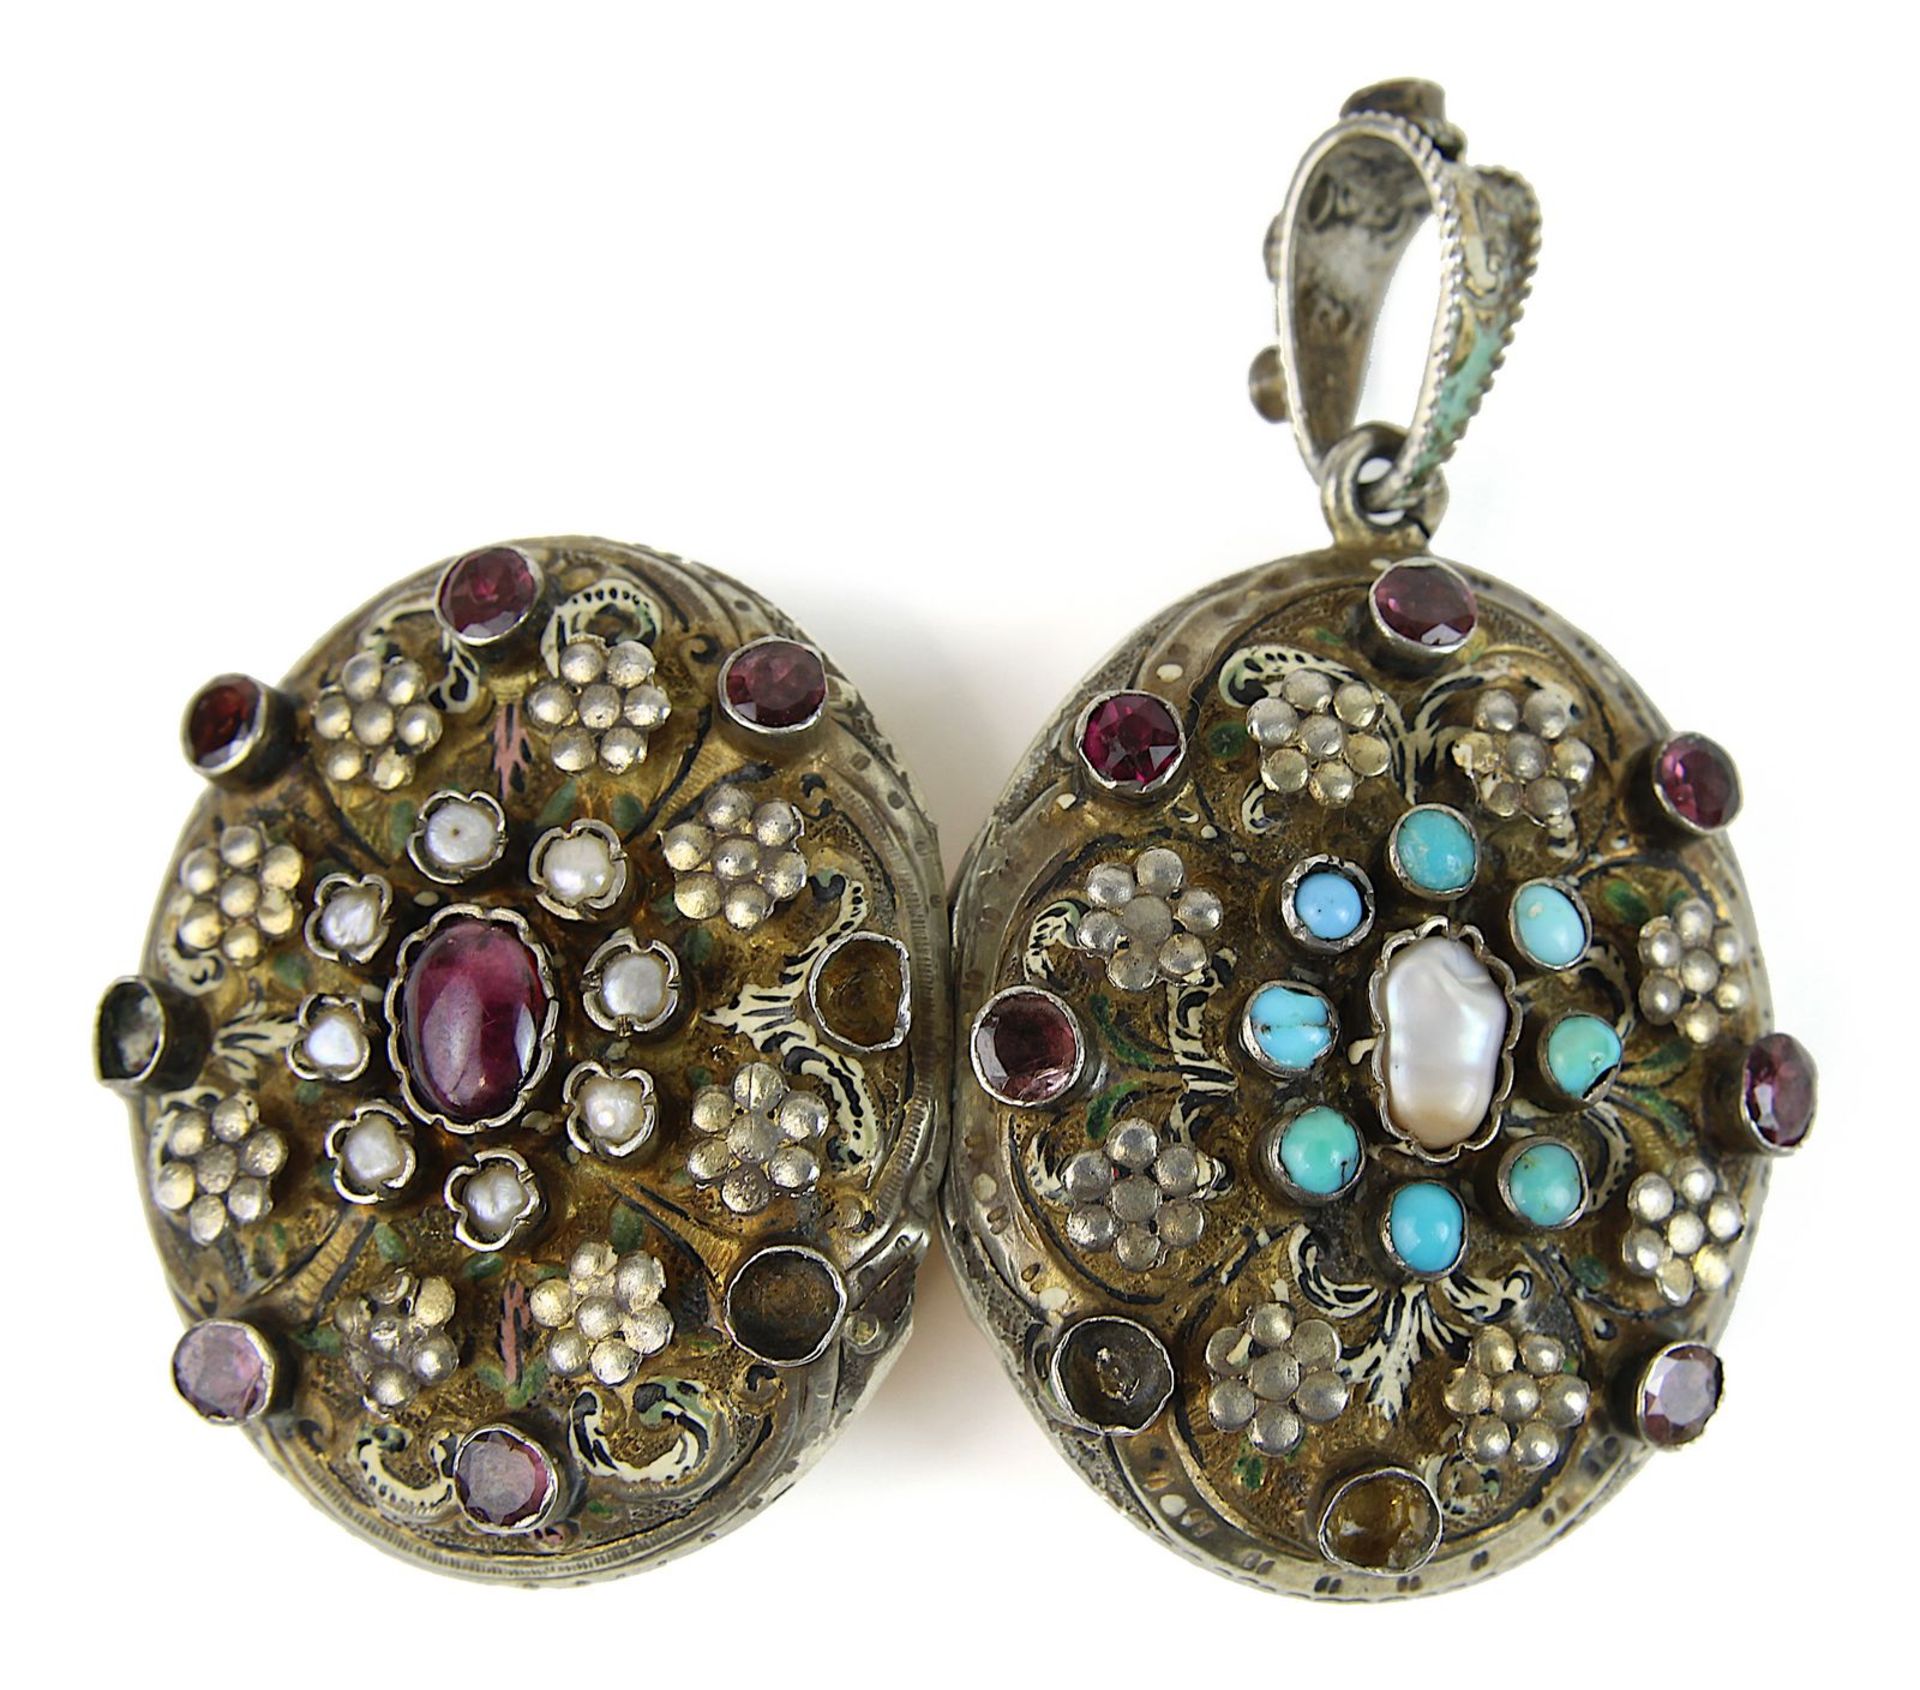 Silbermedaillon mit Perlen und Edelsteinen, Österreich/Ungarn 1866-1922, ovale Form, Schauseiten mit